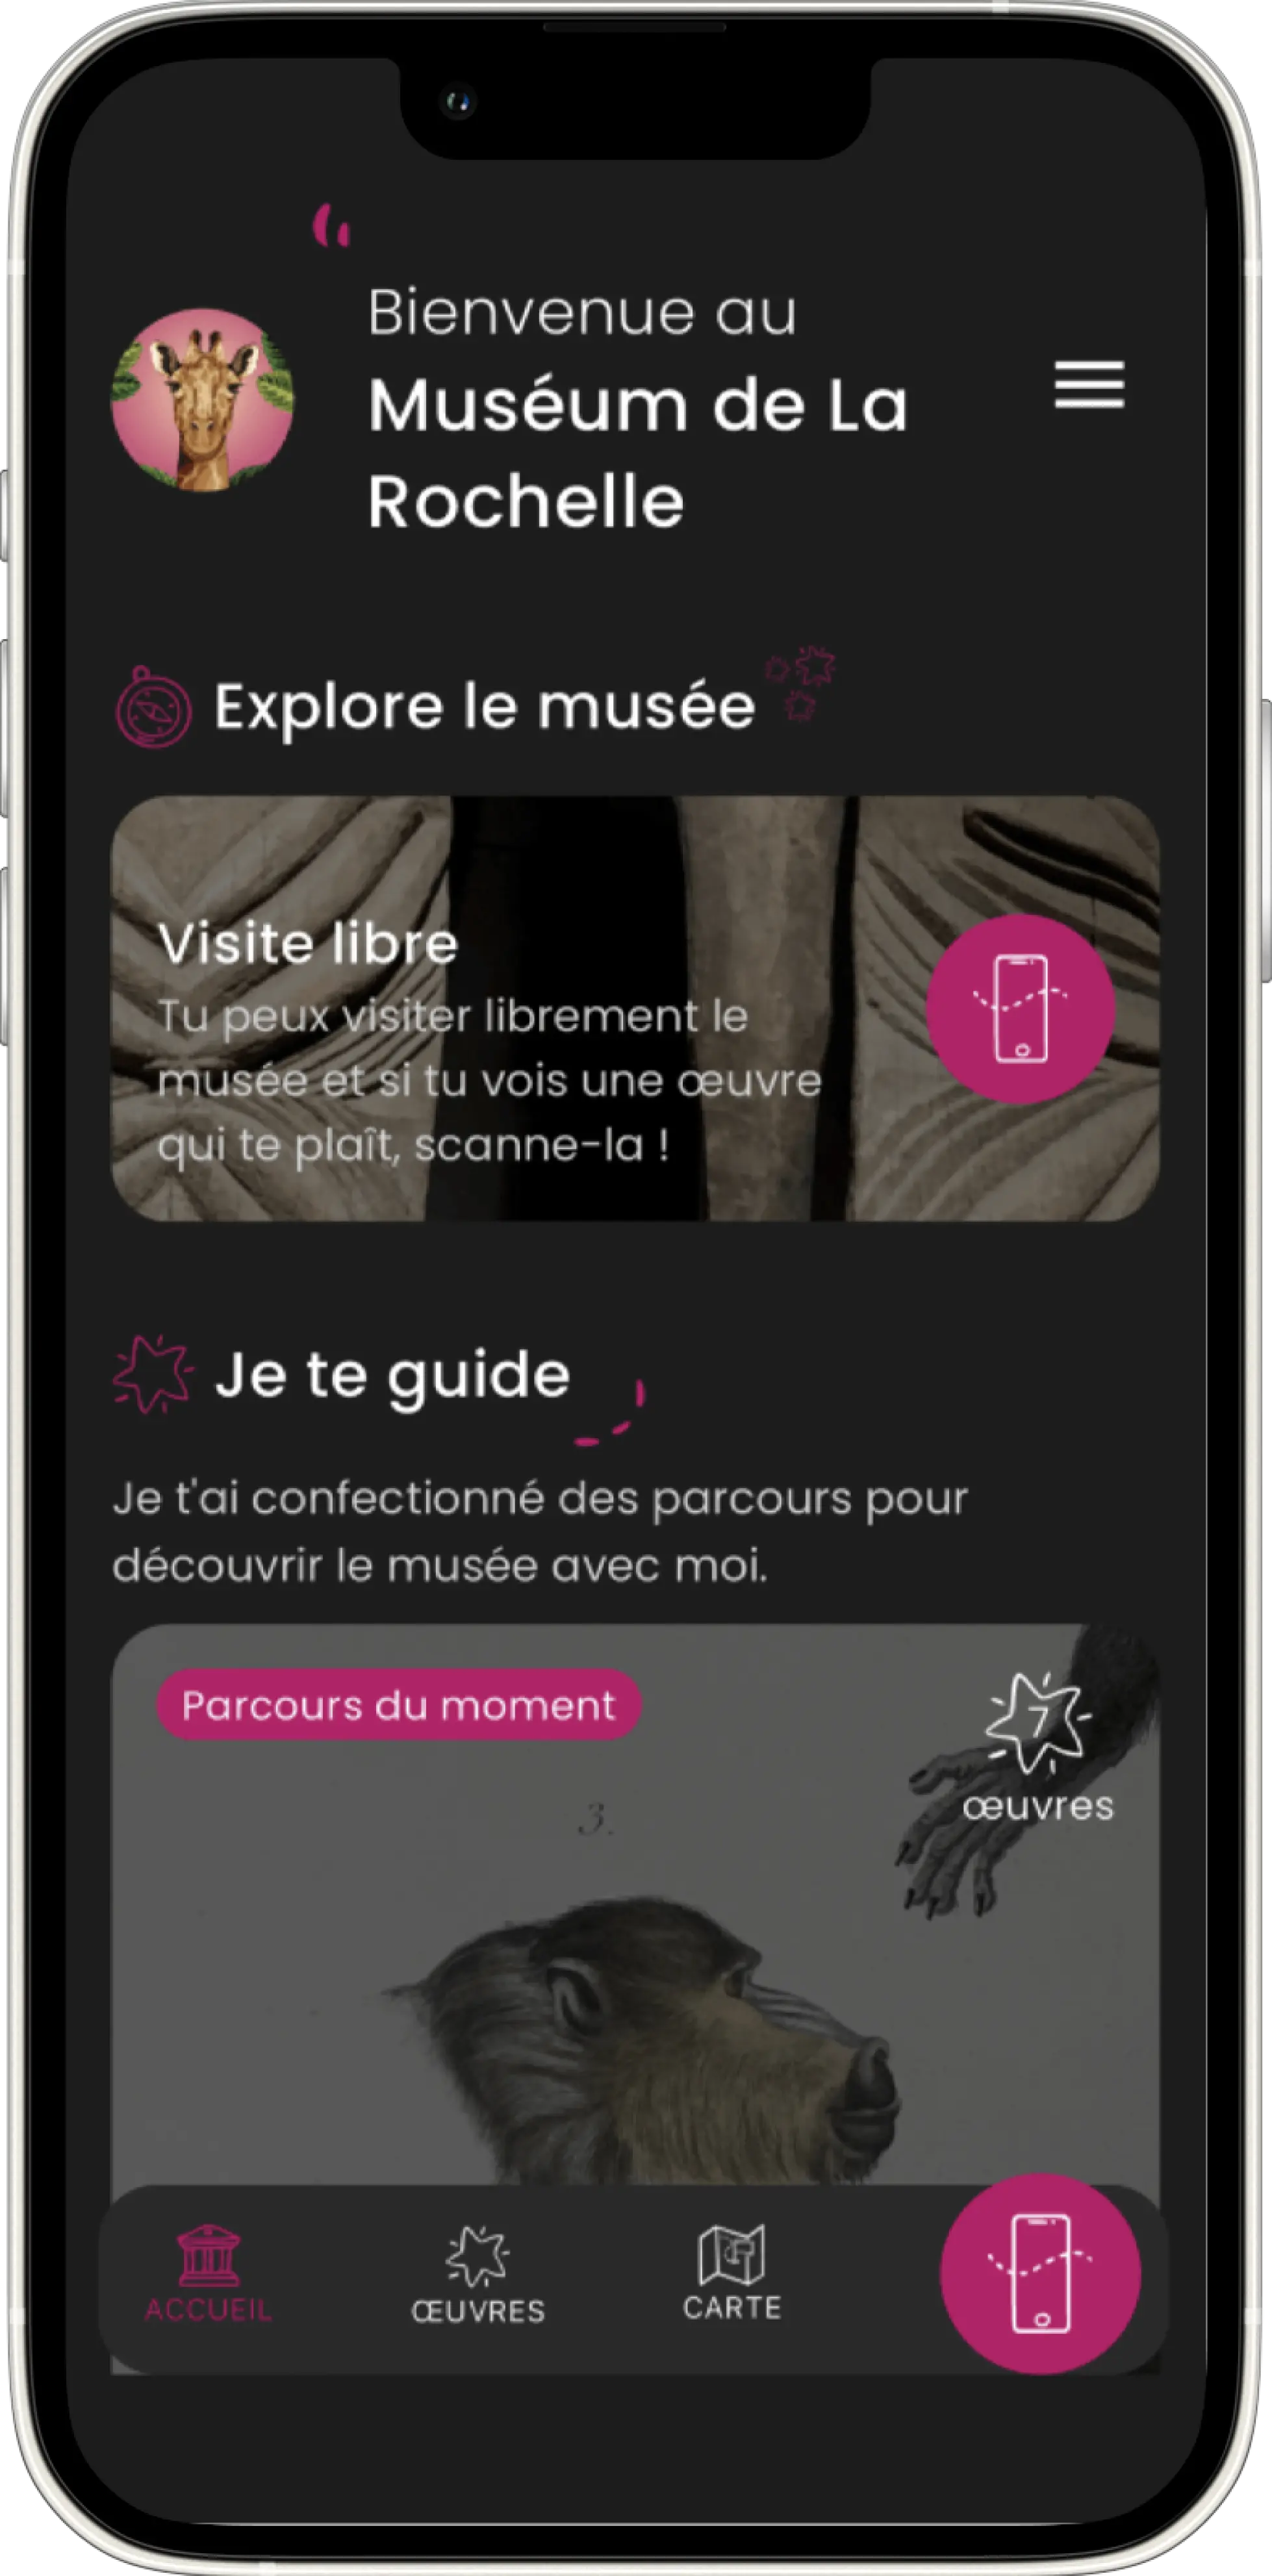 Capture d'écran tirée de l'application de visite musée